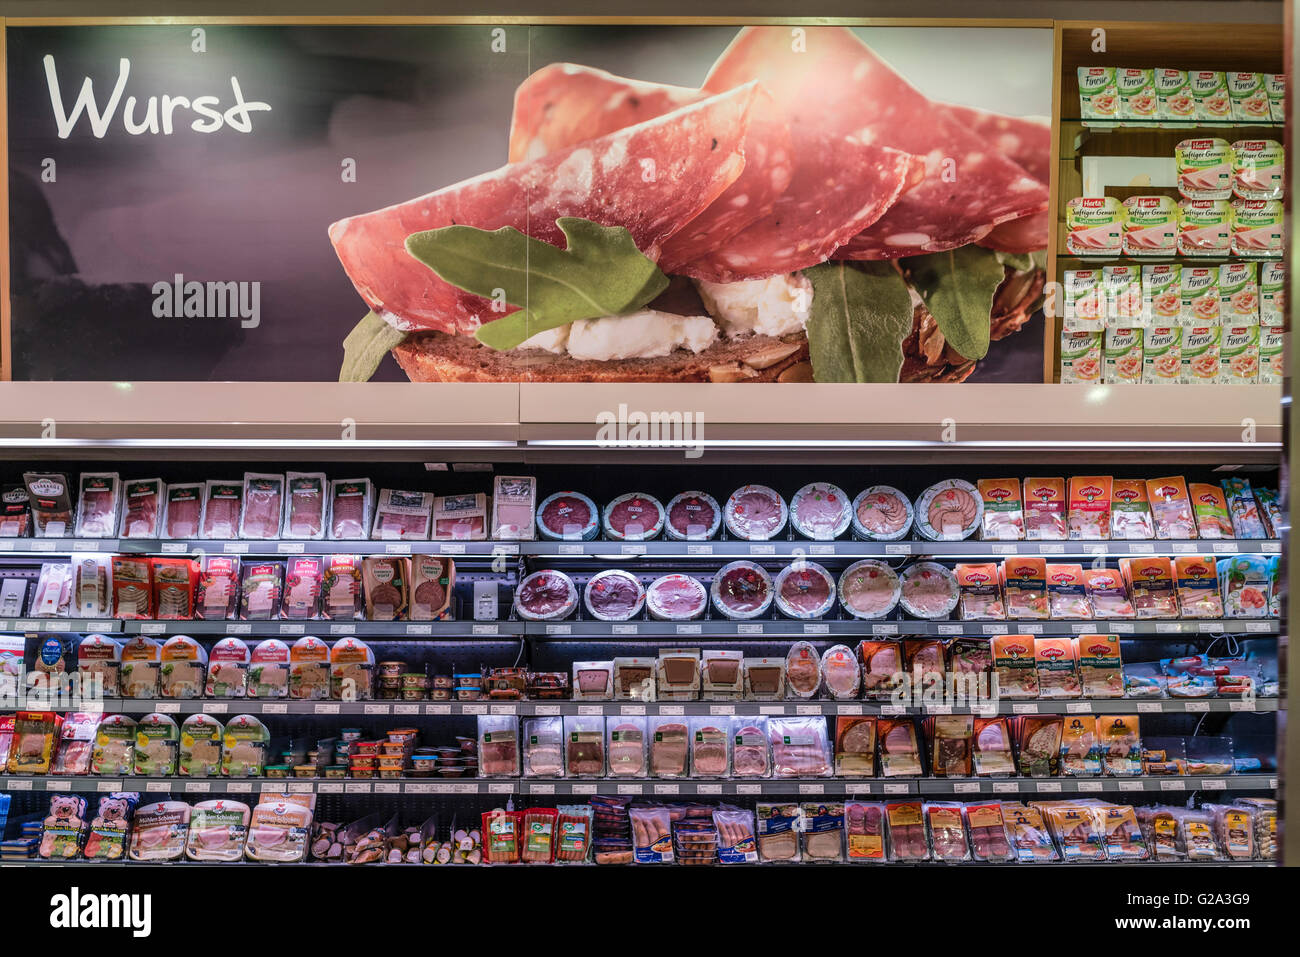 Meat, food, supermarket retail sausage Supermarket, Kuehlregal, Aufschnitt, Wurst, Lebensmittel, Supermarkt, Berlin, Deutschland Stock Photo